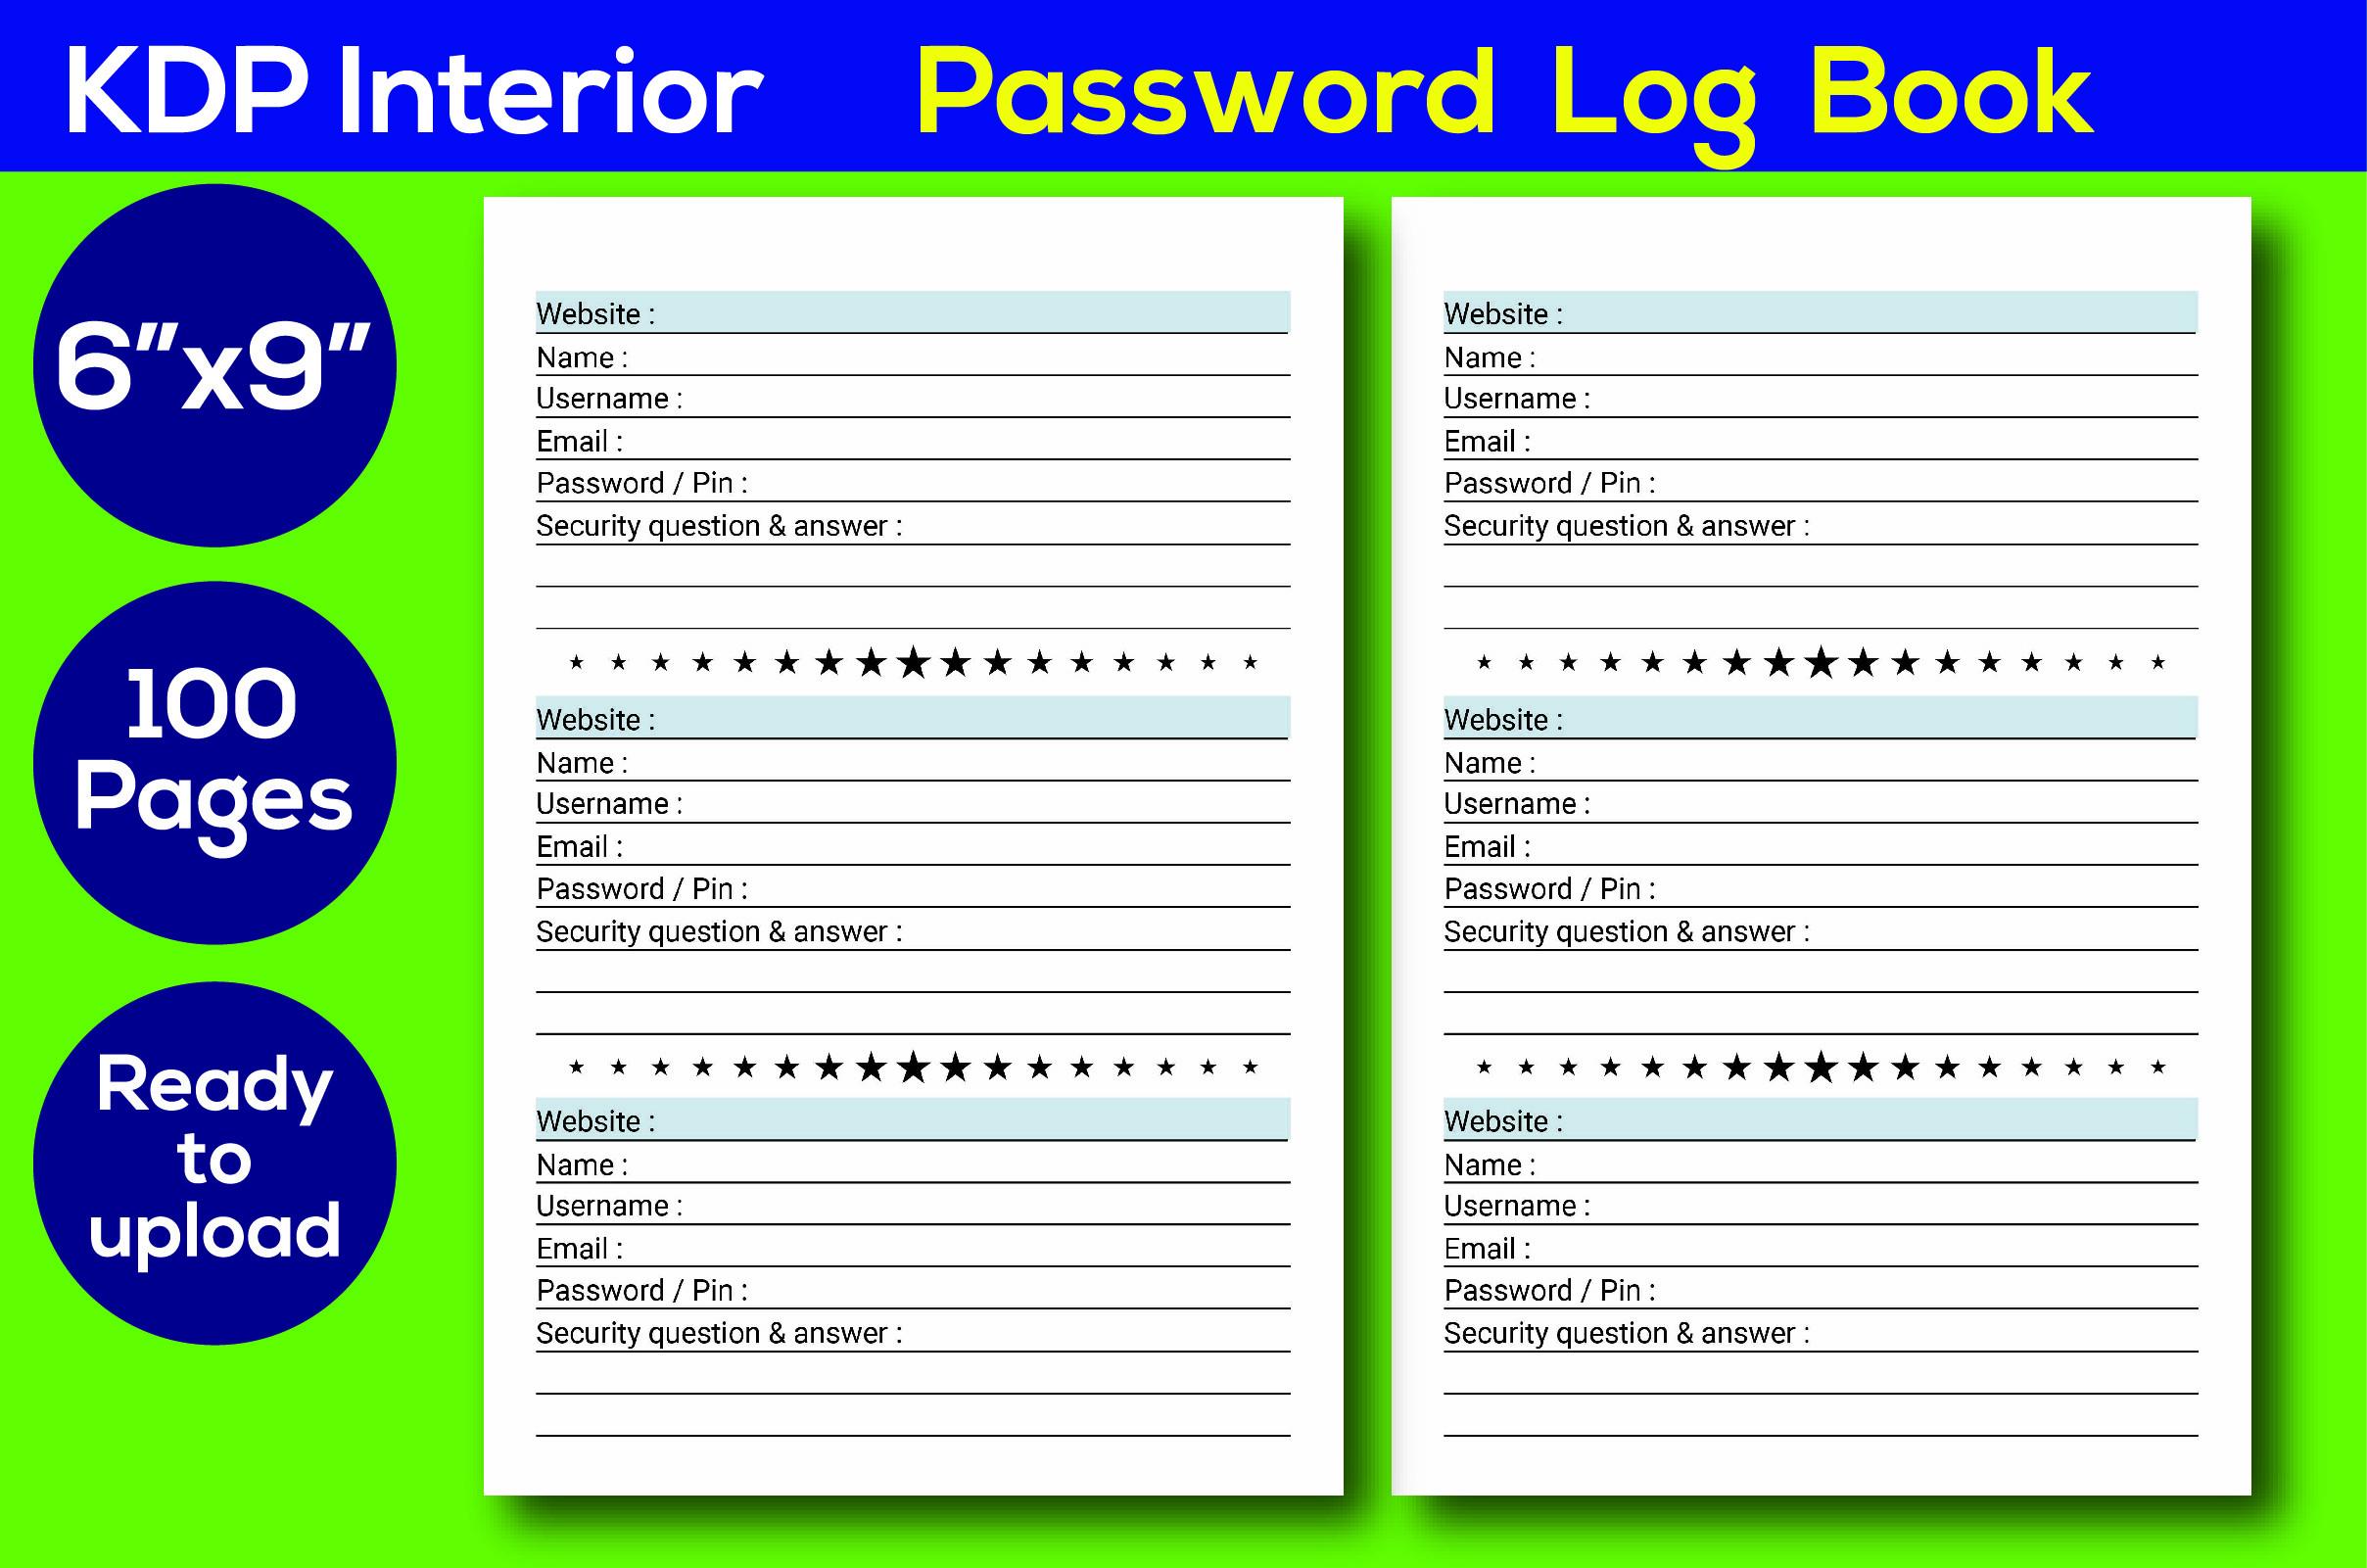 KDP Interior Password Log Book